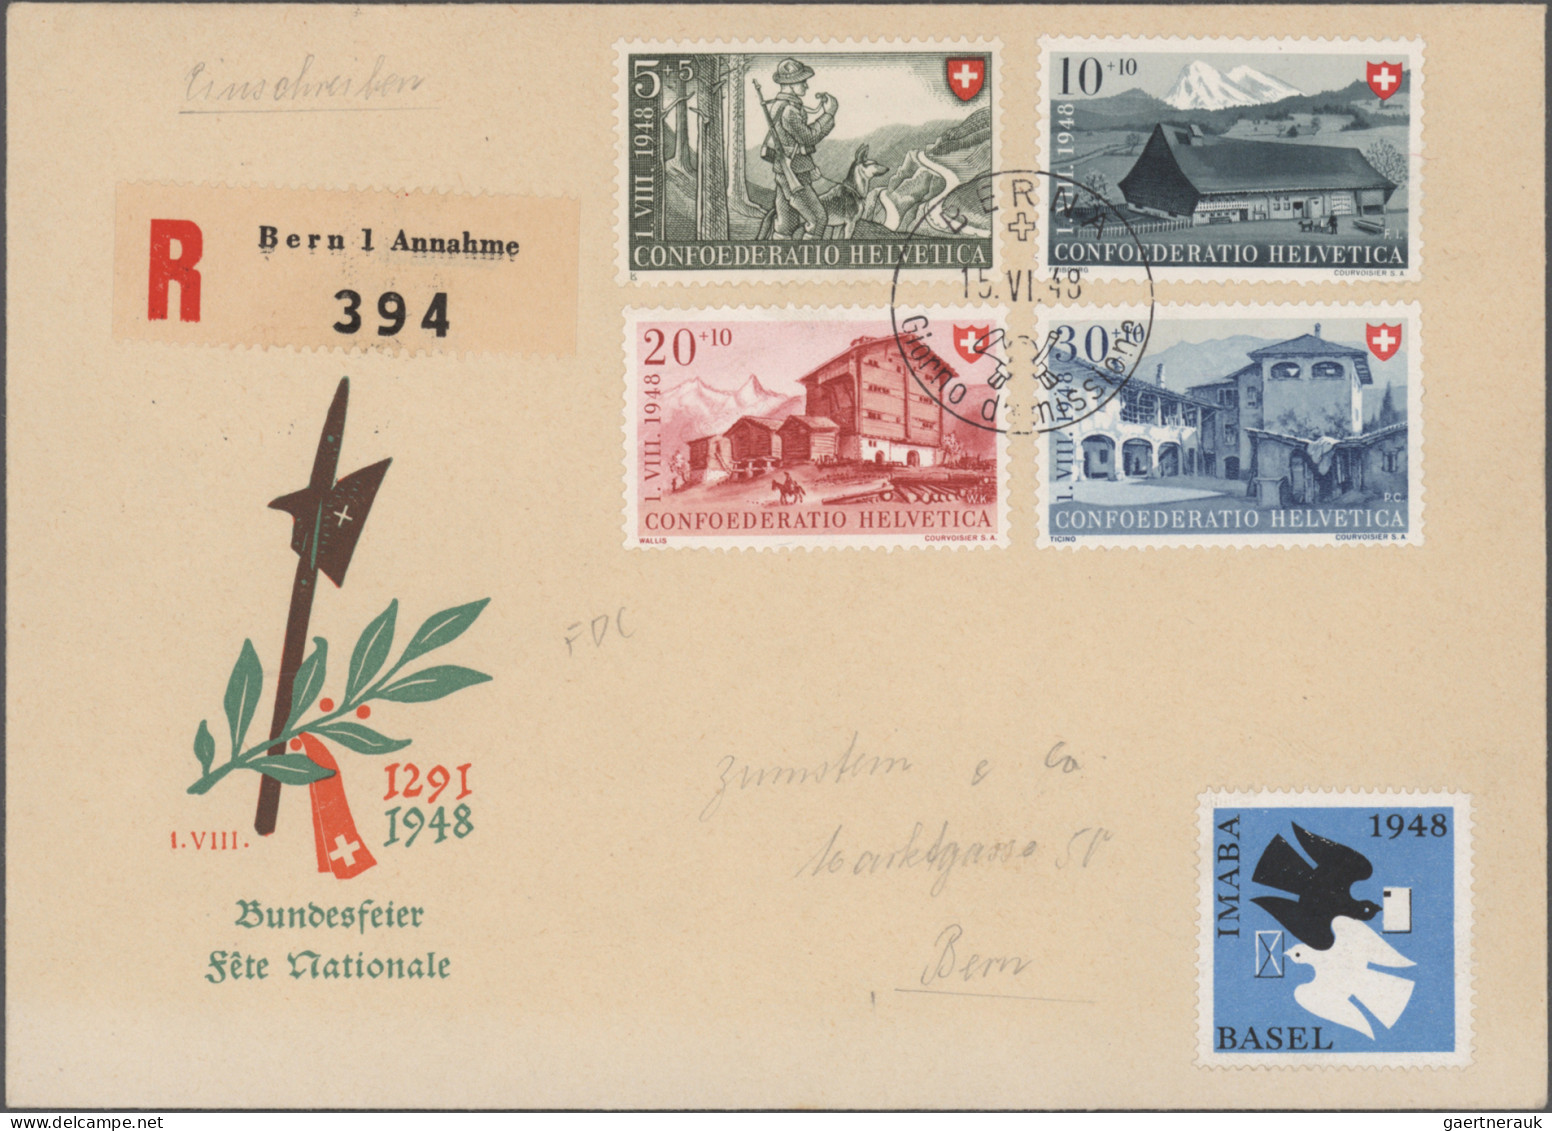 Schweiz: 1937/1959, saubere Sammlung von 34 Belegen, meist FDCs, mit ausschließl